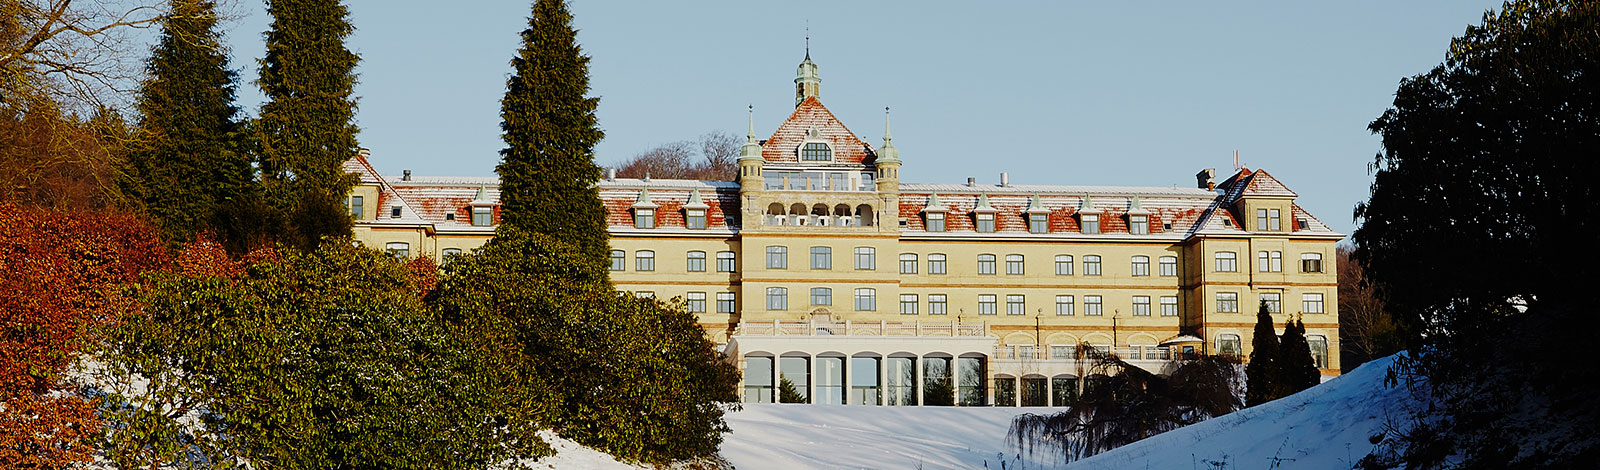 Smukt beliggende Hotel Vejlefjord konference- og spahotel